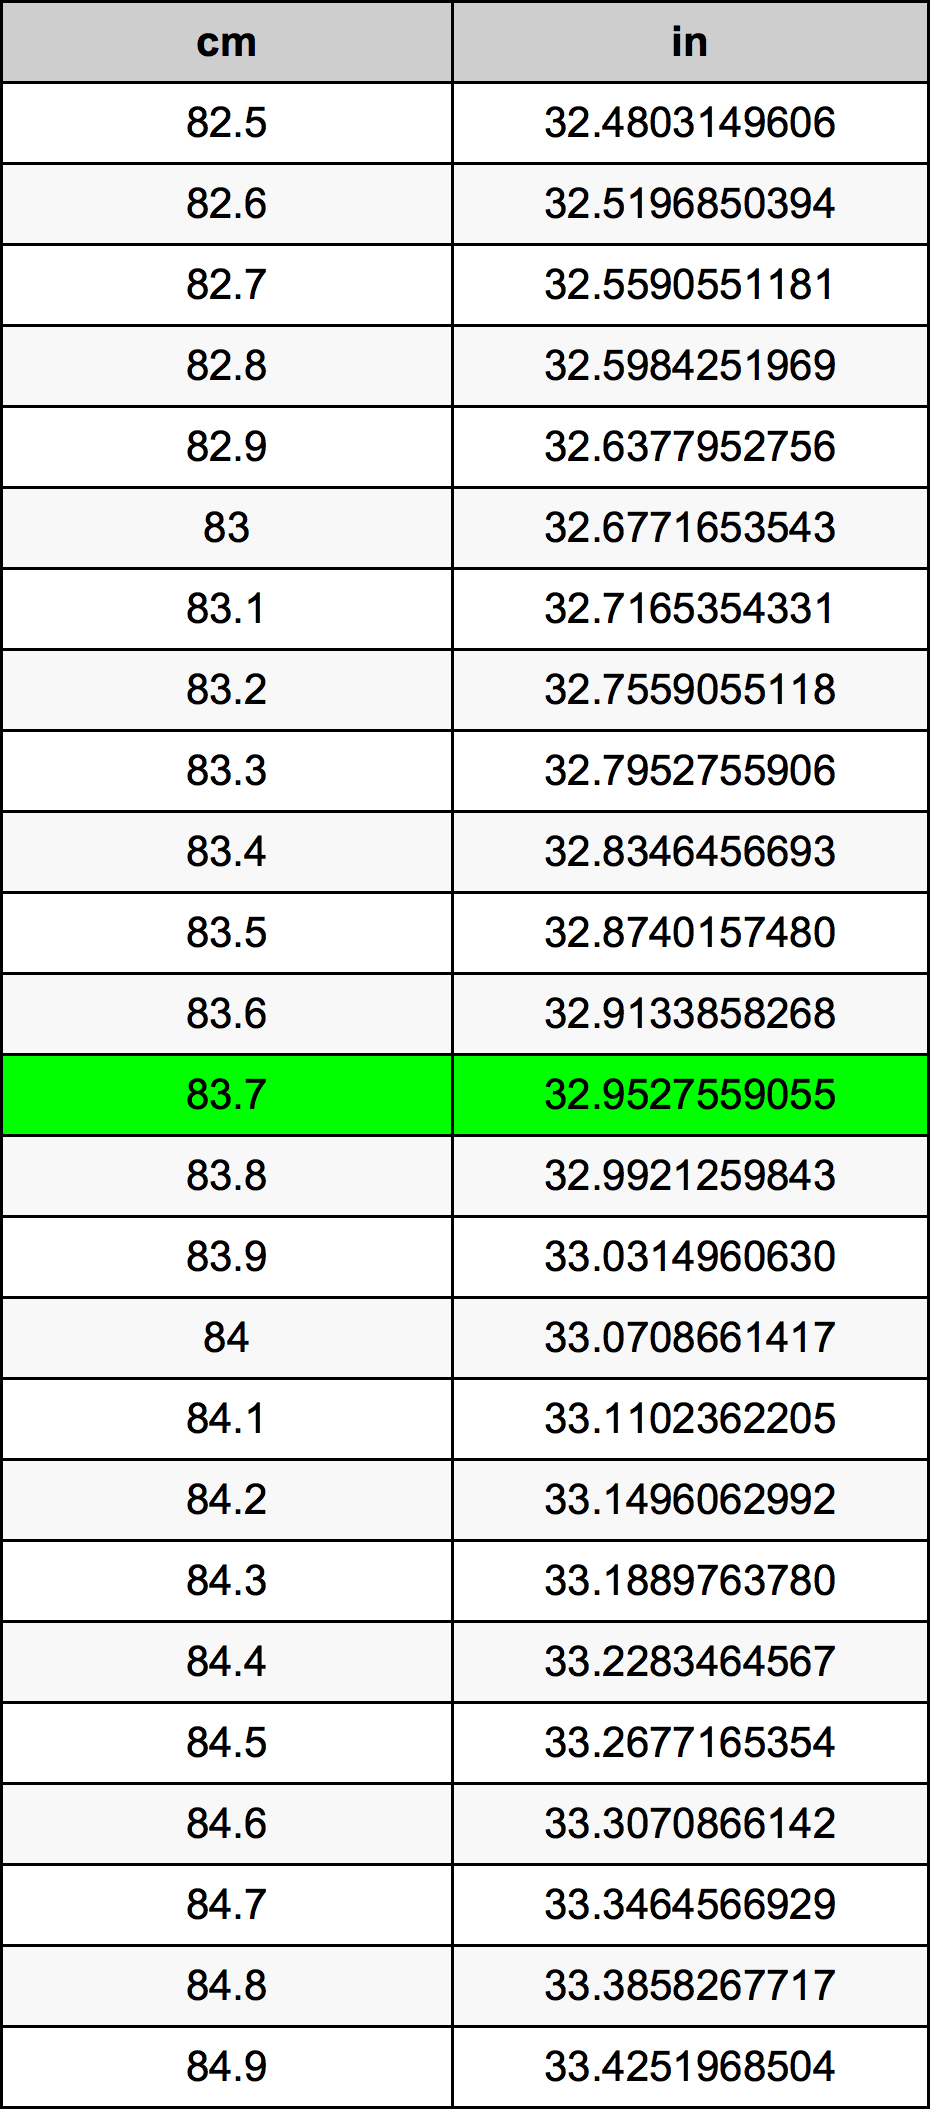 83.7 Centiméter átszámítási táblázat